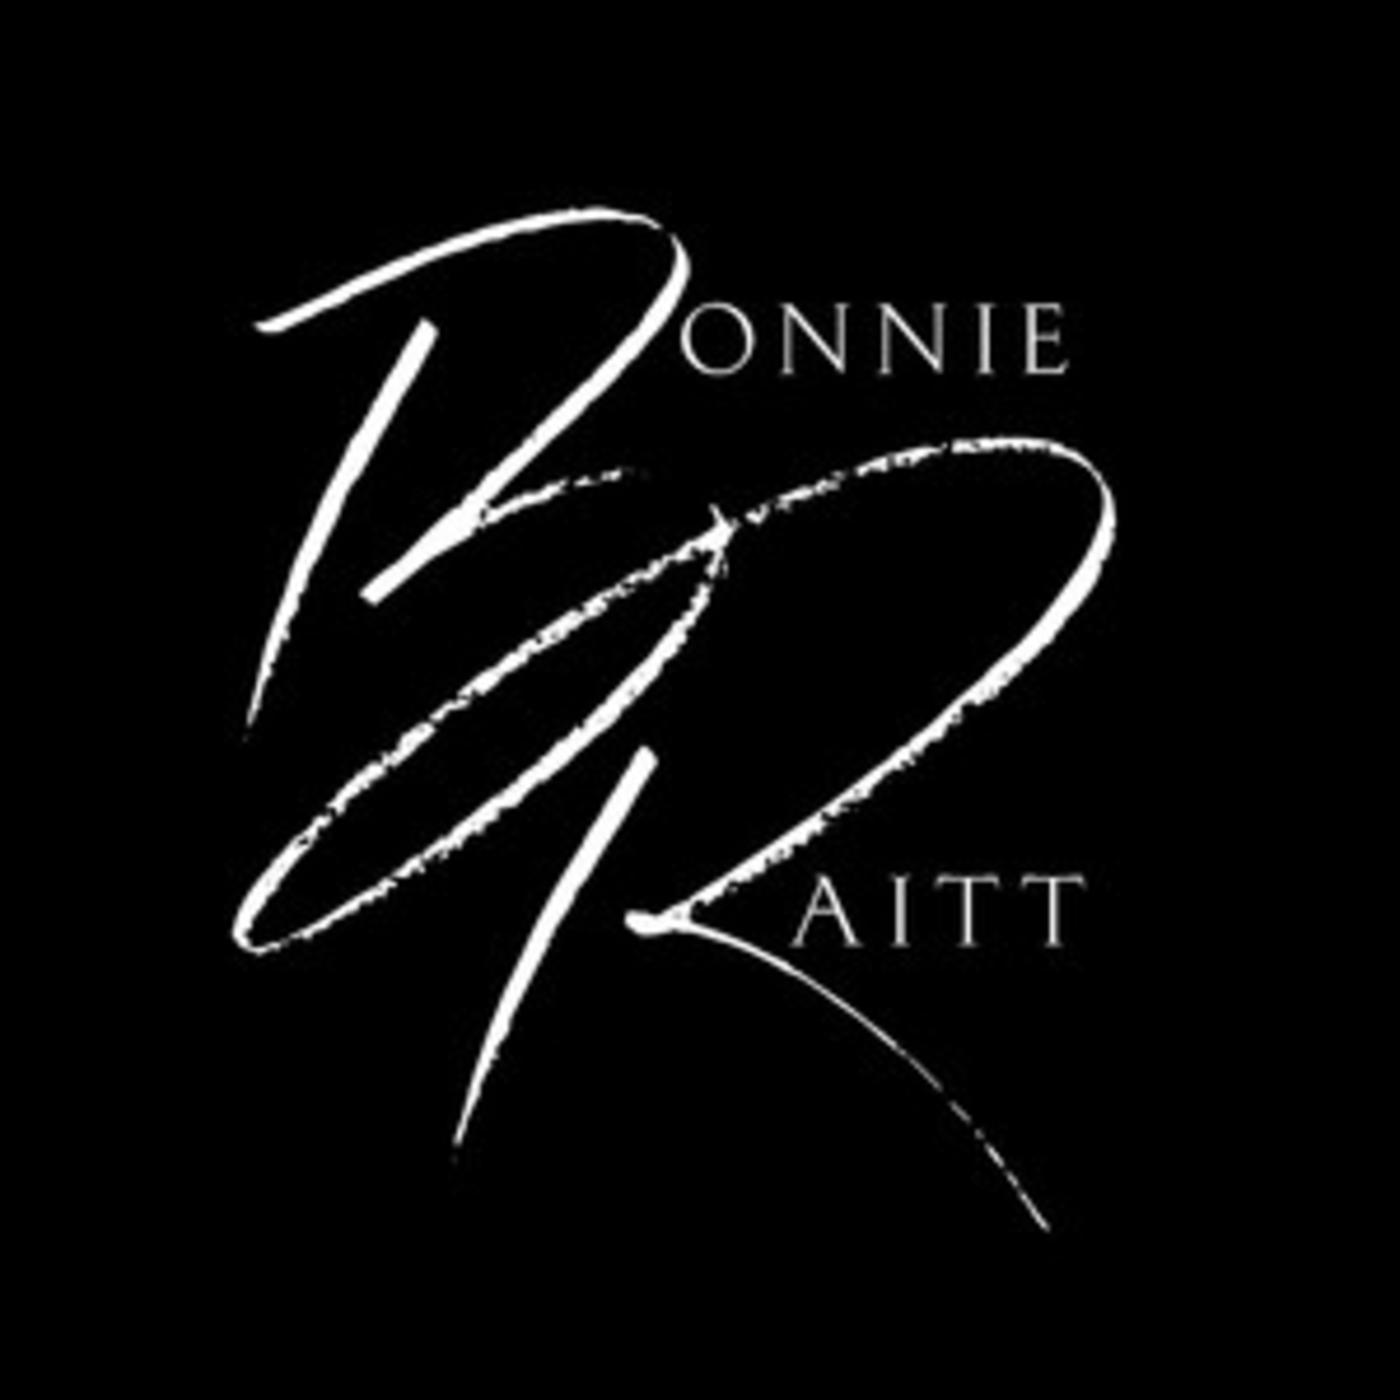 Official Bonnie Raitt playlist - Finest Lovin' Man, Give It Up Or Let Me Go, Women Be Wise, Guilty